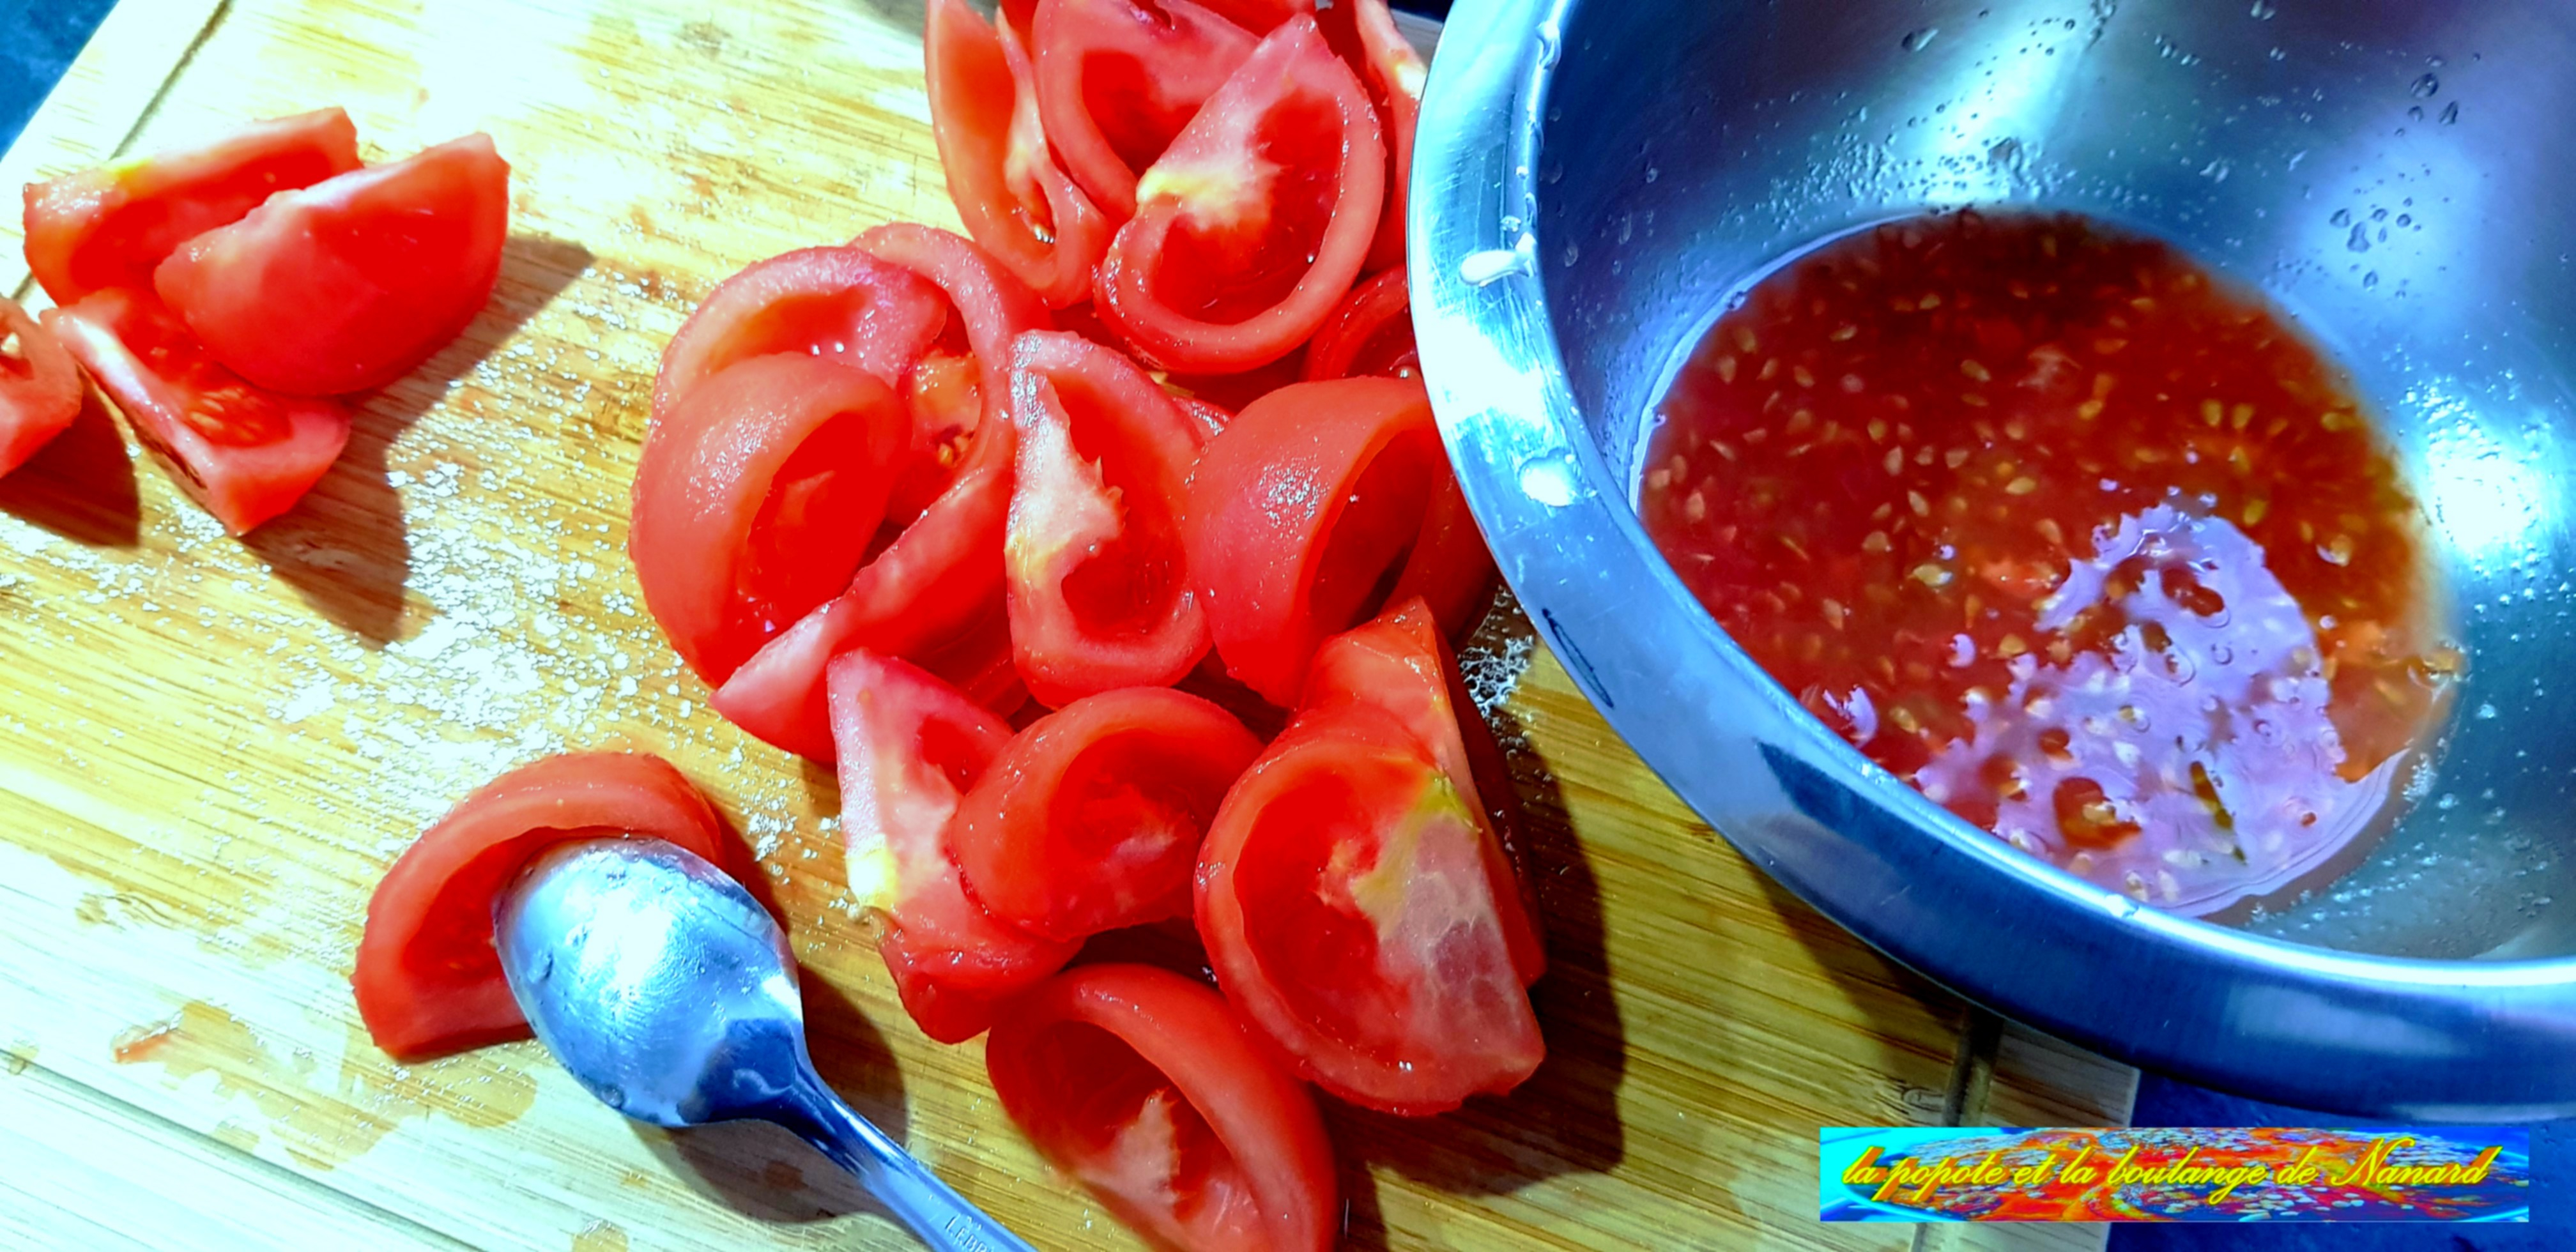 Couper les tomates en quartiers puis les épépiner